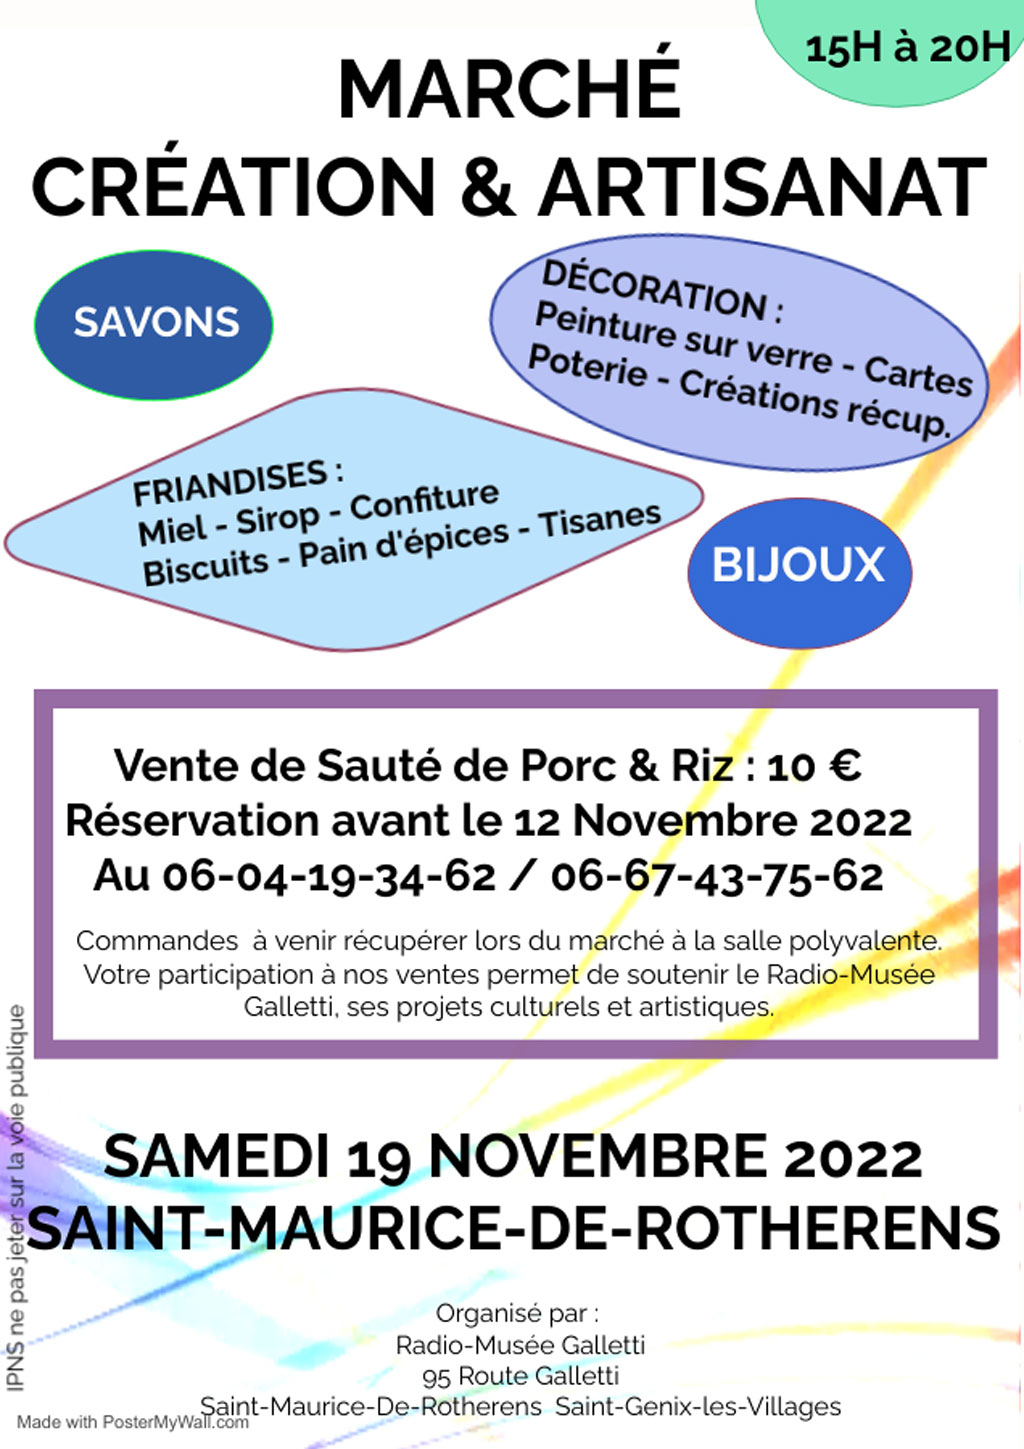 Affiche du Marché création et artisanat samedi 19 novembre 2022 à Saint Maurice de Rotherens